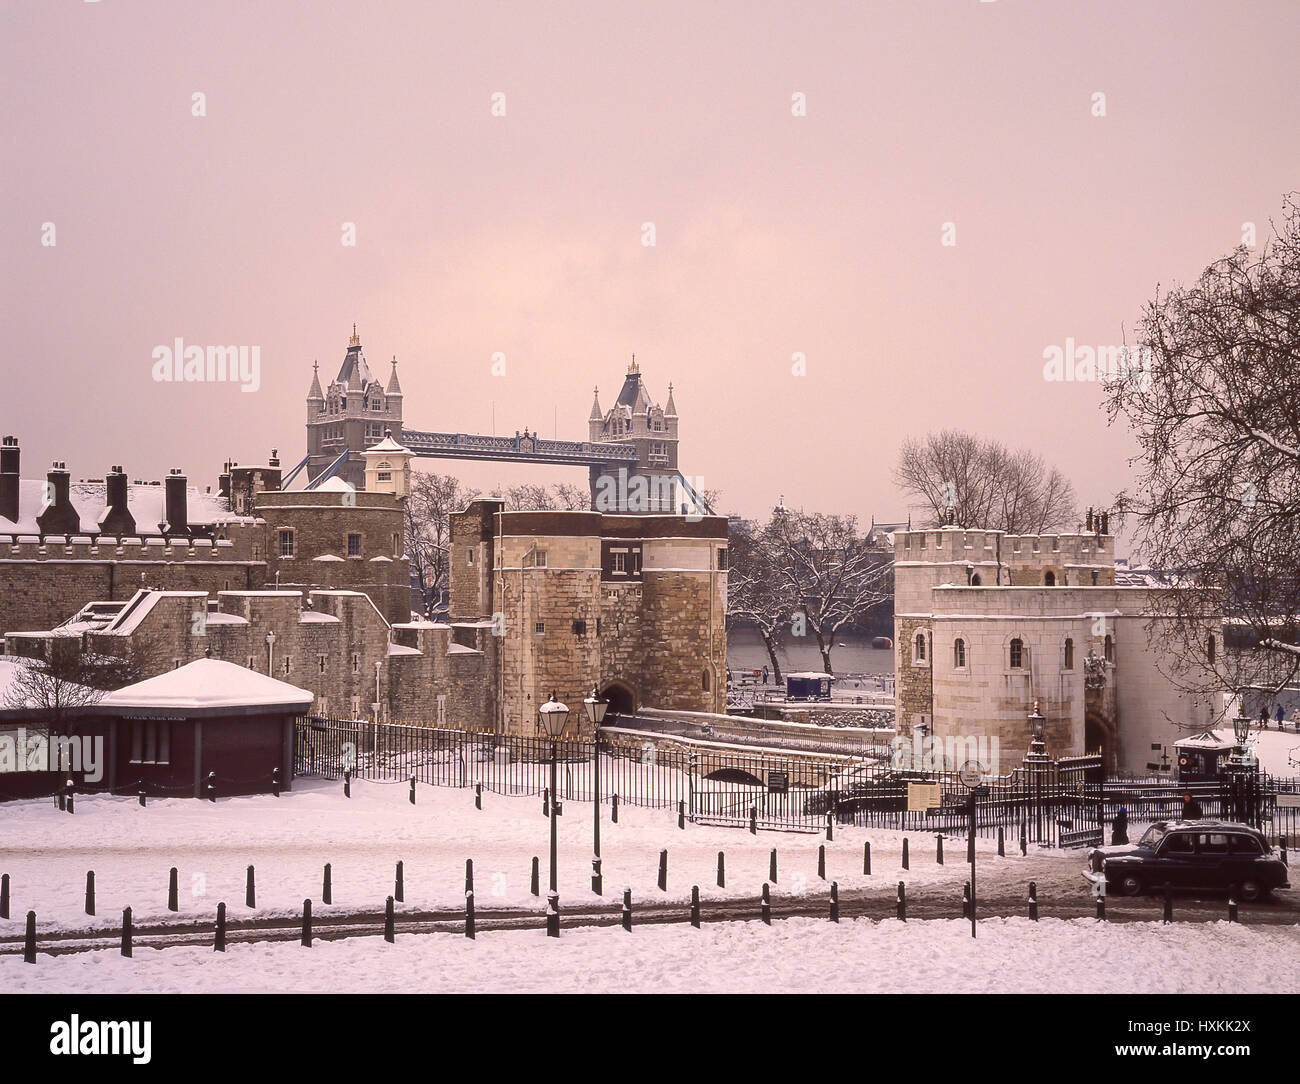 Der Tower of London im Winter Schnee, London Borough of Tower Hamlets, Greater London, England, Vereinigtes Königreich Stockfoto